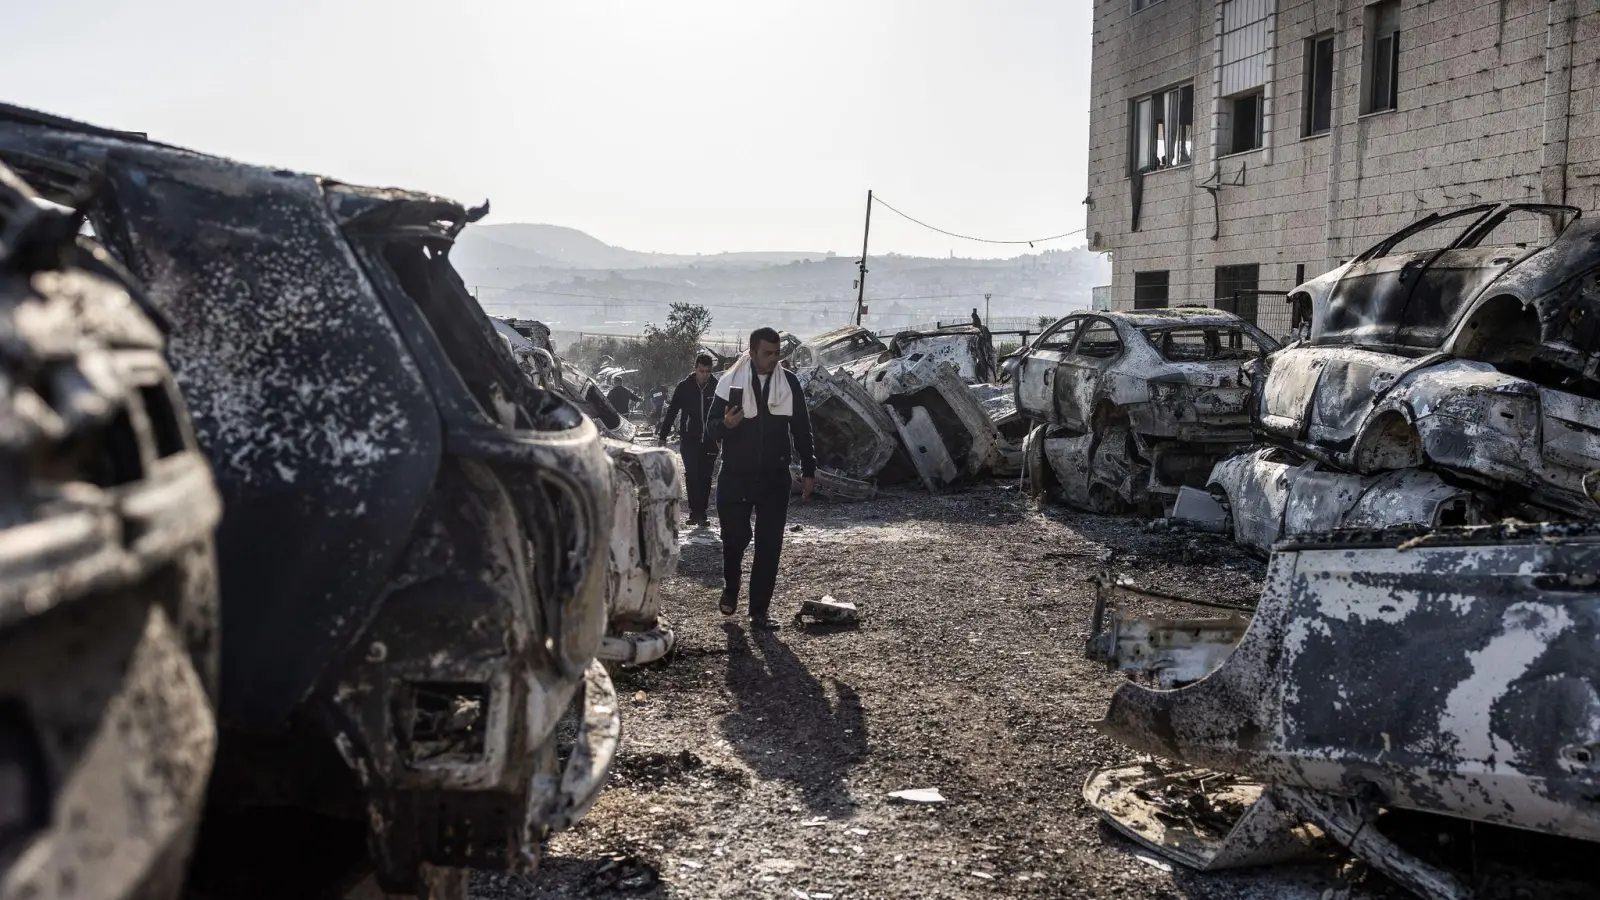 Männer gehen in Huwara an verbrannten und zerstörten Fahrzeugen vorbei. Nach einem tödlichen Anschlag auf zwei Israelis war es dort zu schweren Ausschreitungen israelischer Siedler gekommen. (Foto: Ilia Yefimovich/dpa)